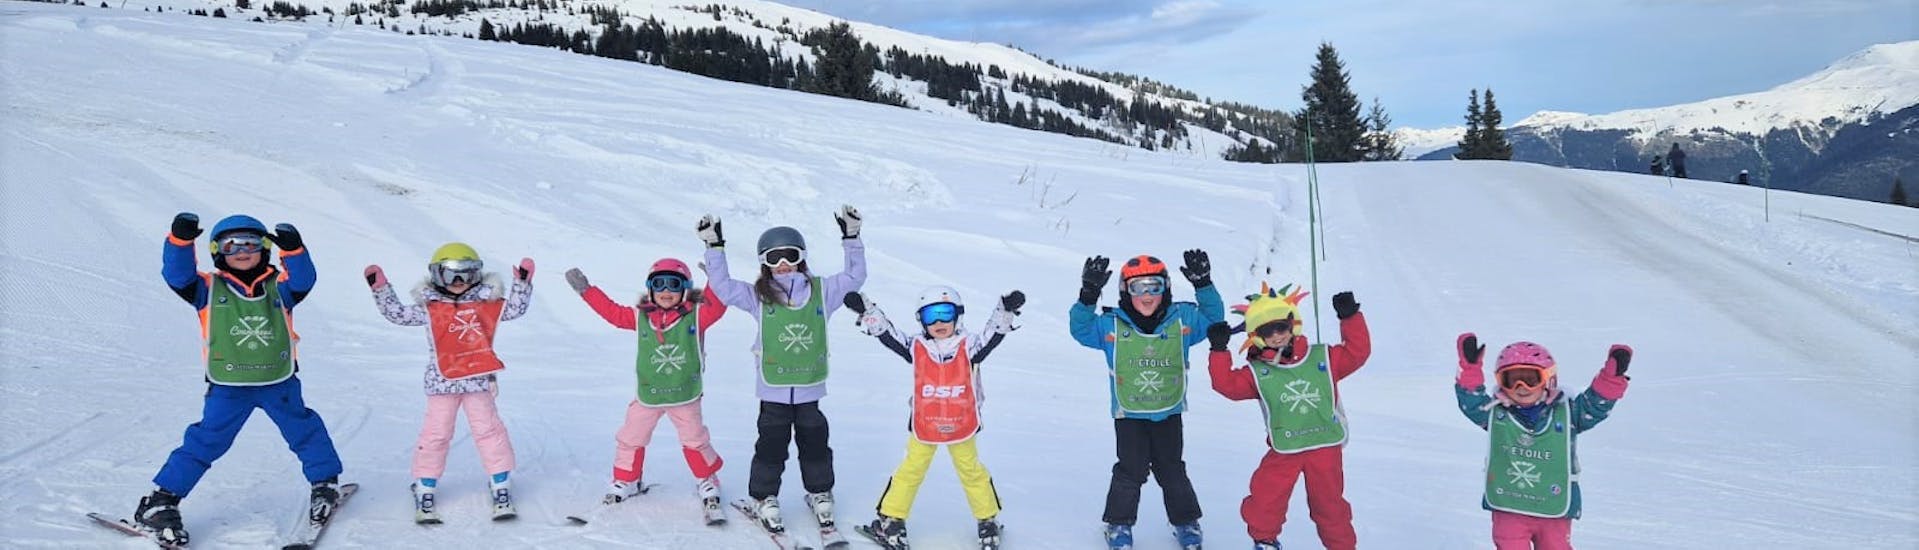 Cours de ski Enfants "Club Piou-Piou" (3-5 ans).